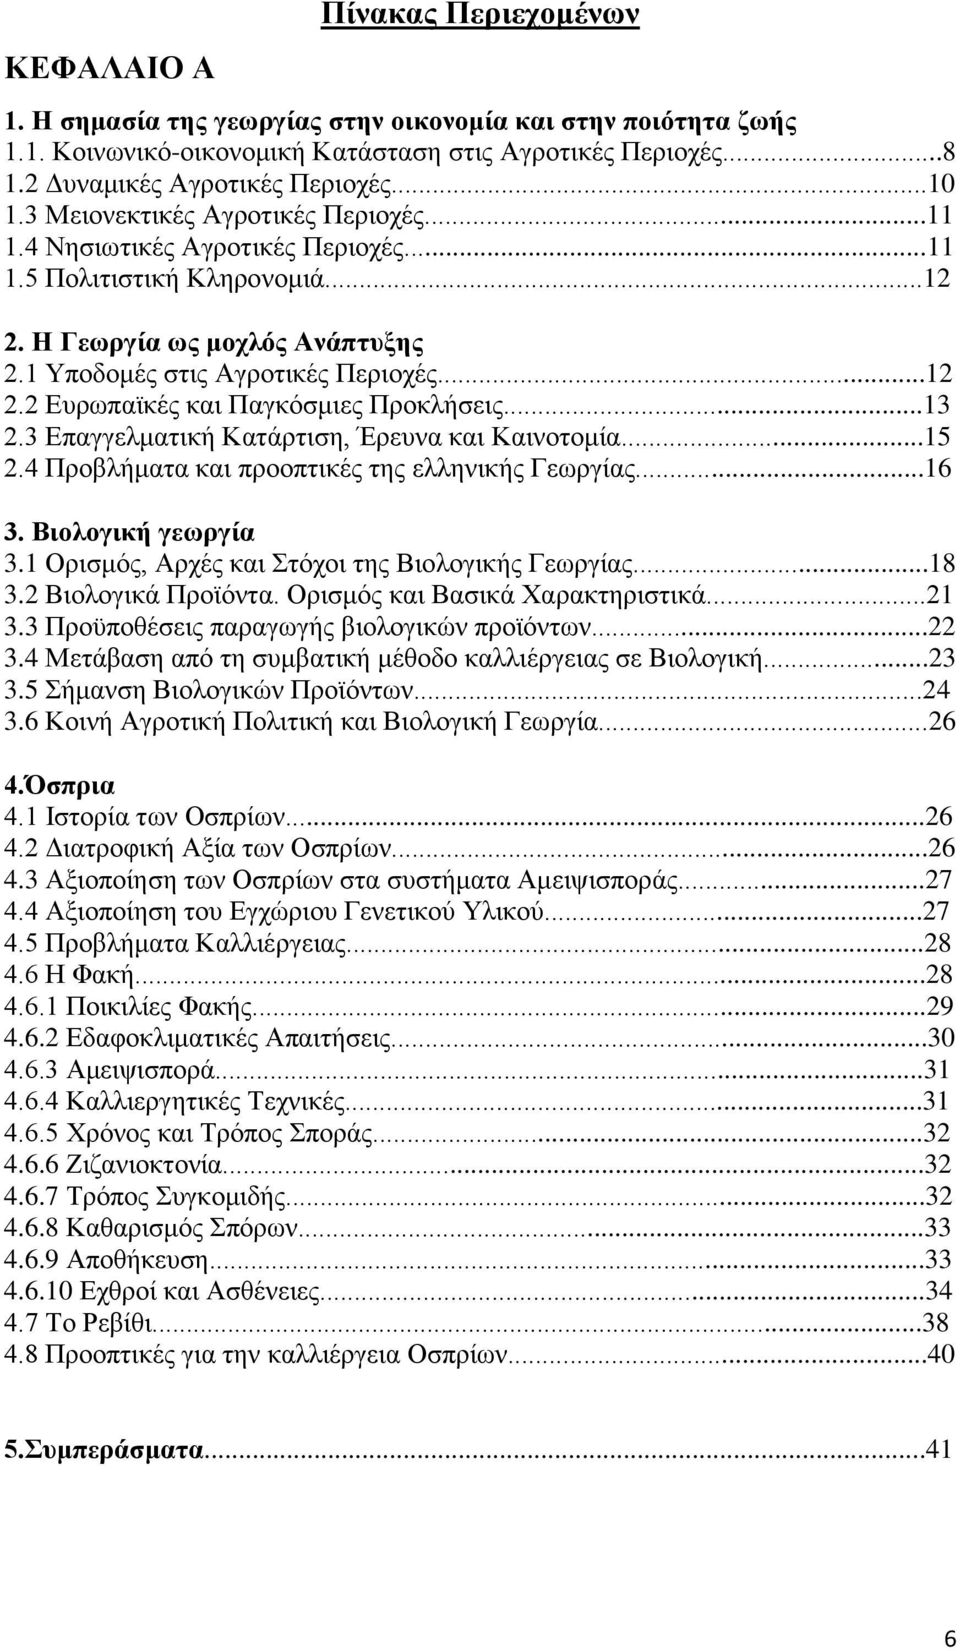 ..13 2.3 Επαγγελματική Κατάρτιση, Έρευνα και Καινοτομία...15 2.4 Προβλήματα και προοπτικές της ελληνικής Γεωργίας...16 3. Βιολογική γεωργία 3.1 Ορισμός, Αρχές και Στόχοι της Βιολογικής Γεωργίας...18 3.